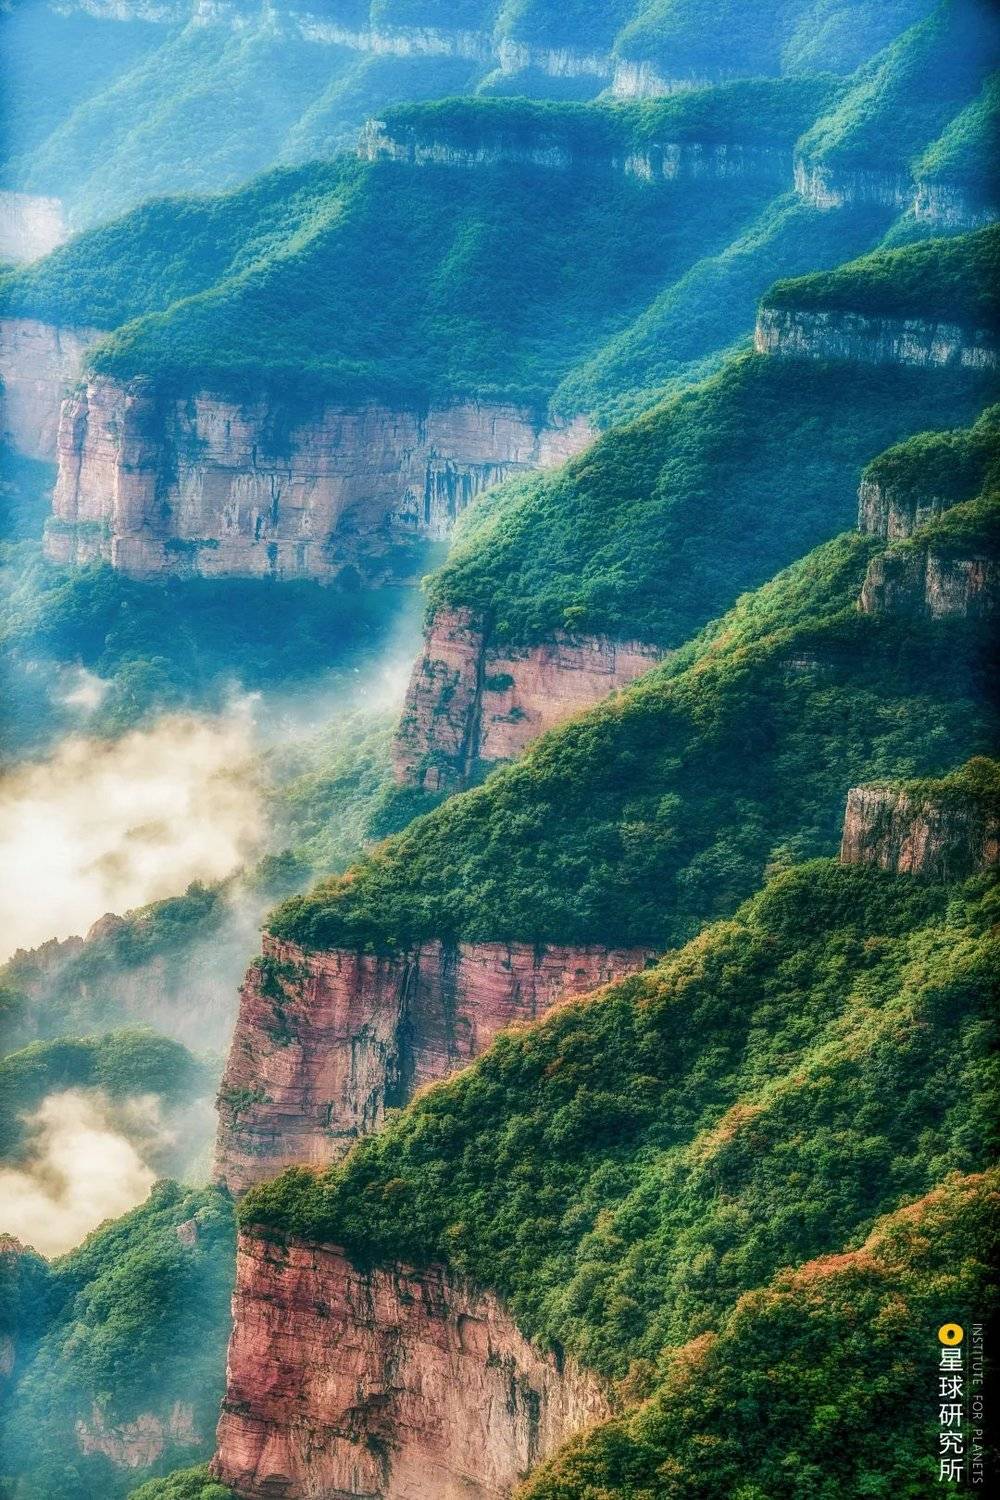 河南辉县关山国家地质公园内，阶梯状的山体。摄影师@李琼